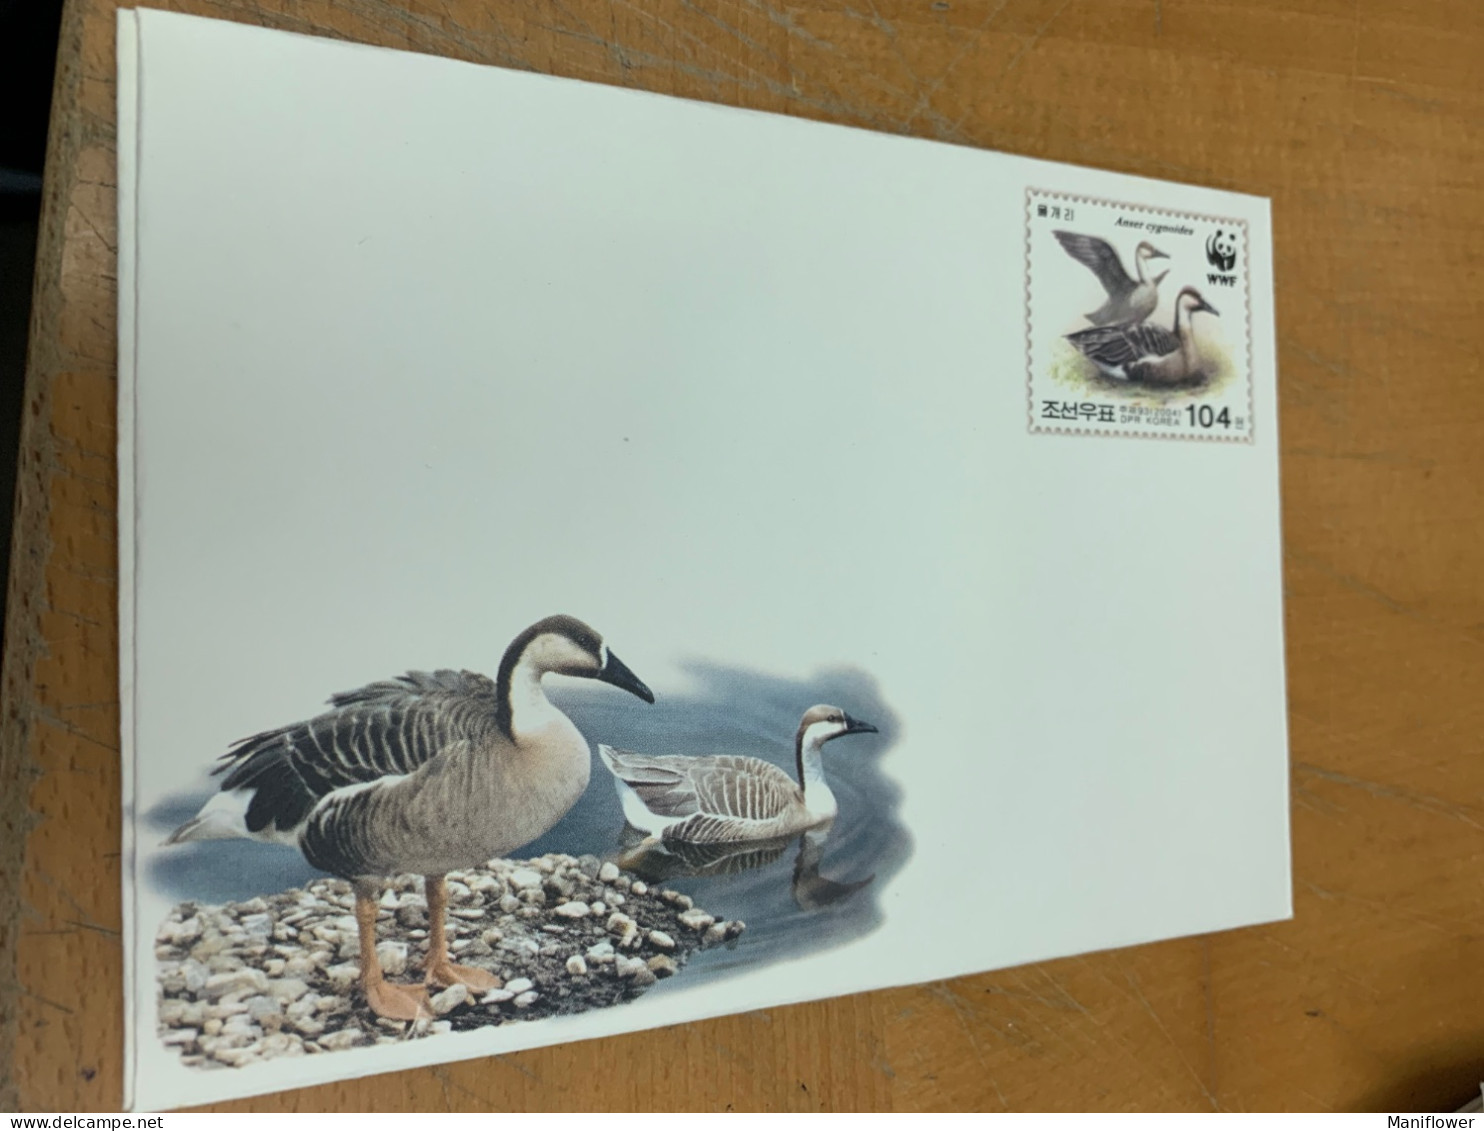 Korea Stamp Birds WWF FDC Entire - Corea Del Norte